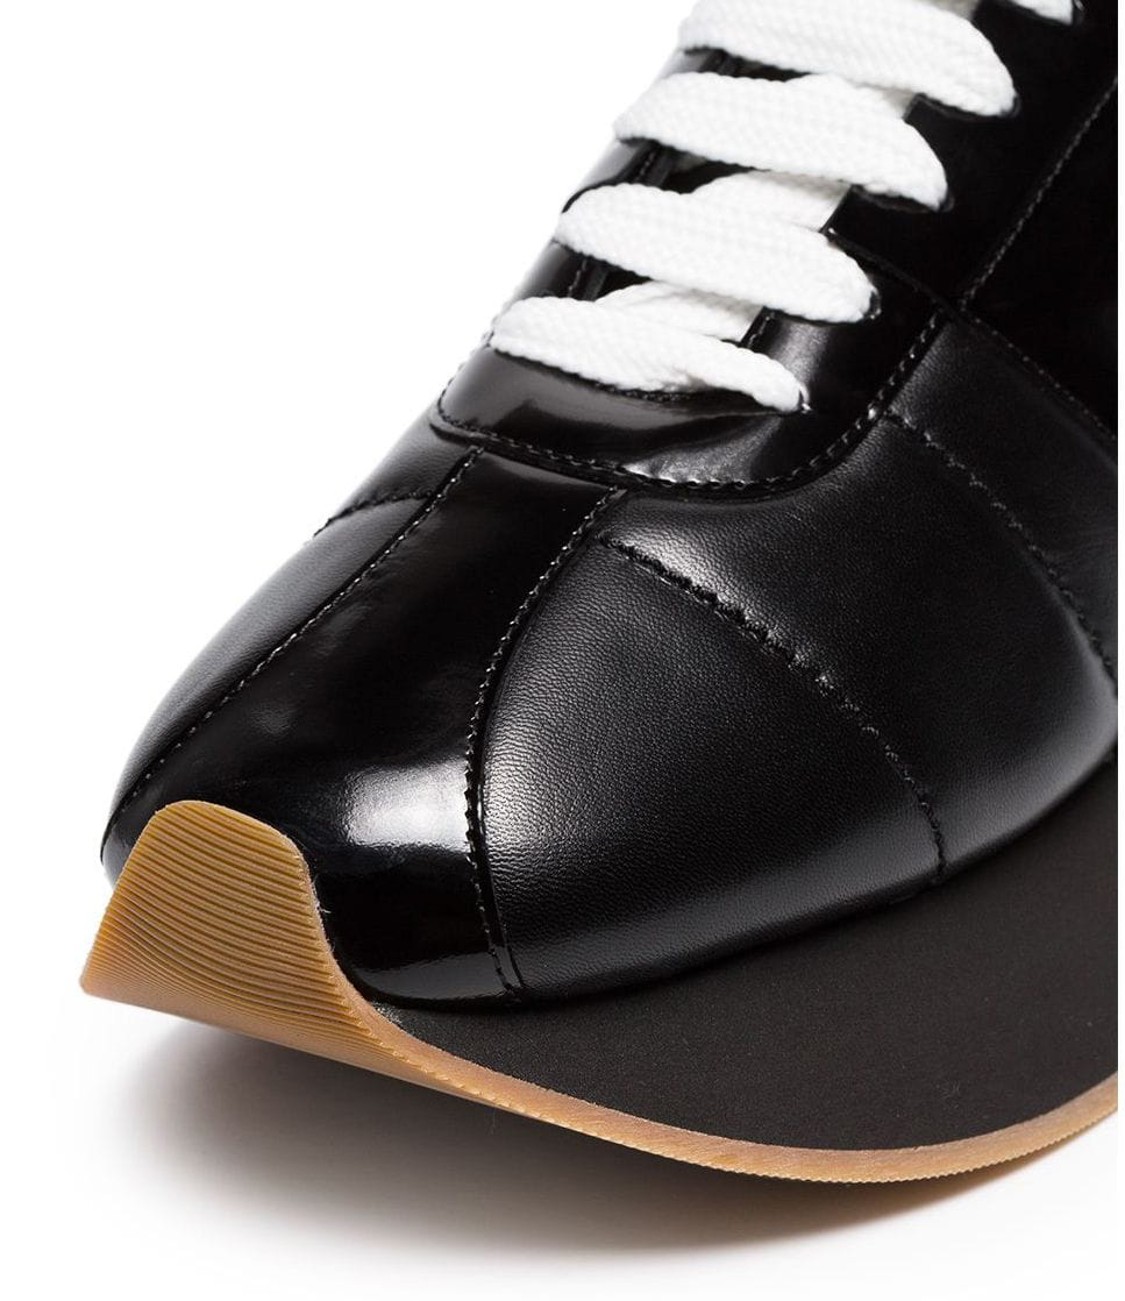 shop Marni Saldi Scarpe: Sneakers Marni, modello big foot, in pelle nera, suola in gomma nera, stringhe a contrasto bianche.

Composizione: 100% pelle.
Suola: 100% gomma.
 number 1620